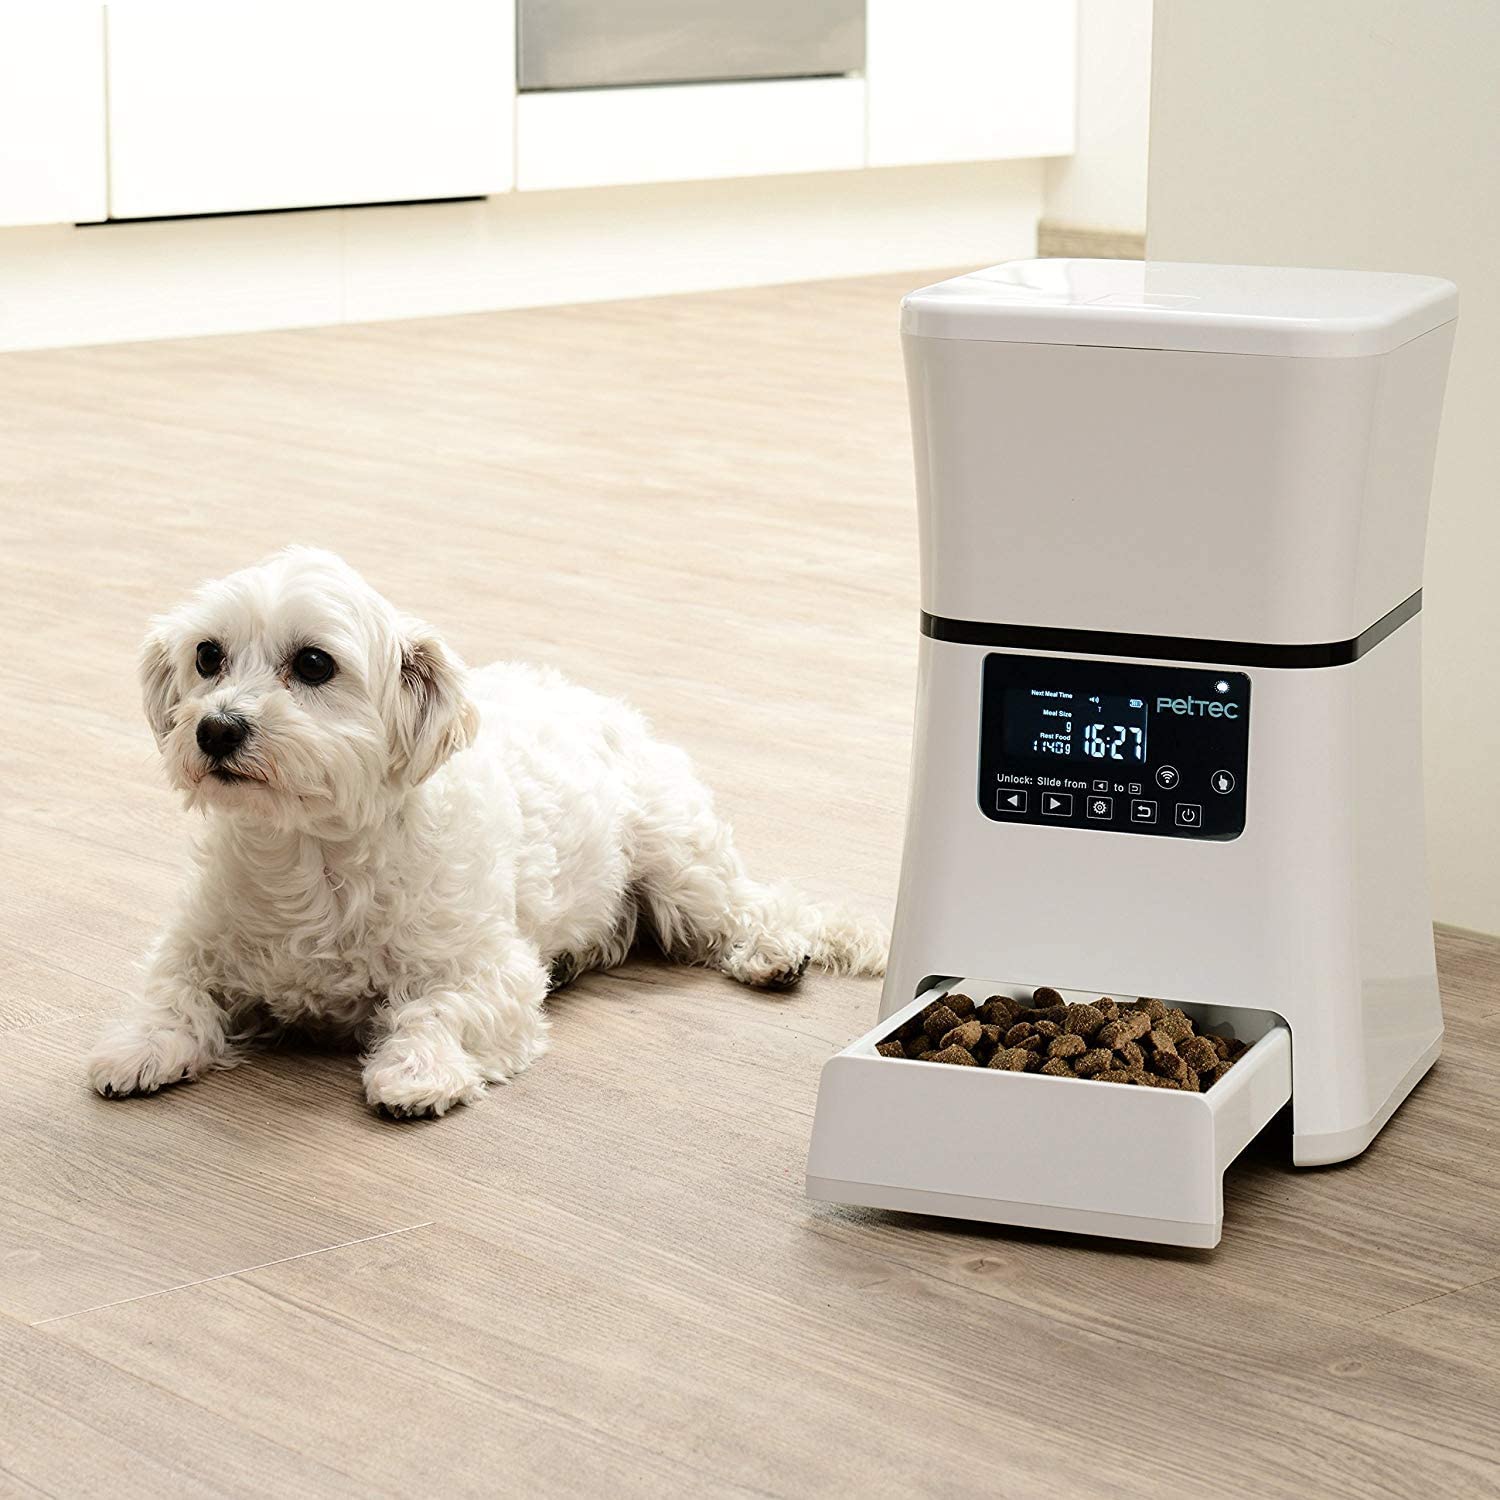  PetTec Smart Pet Dispensador de alimentos para perros y gatos, dispensador de comidas automático cuenco con control desde app y temporizador, pantalla LCD, hasta 2.5 kg / 5 litros 